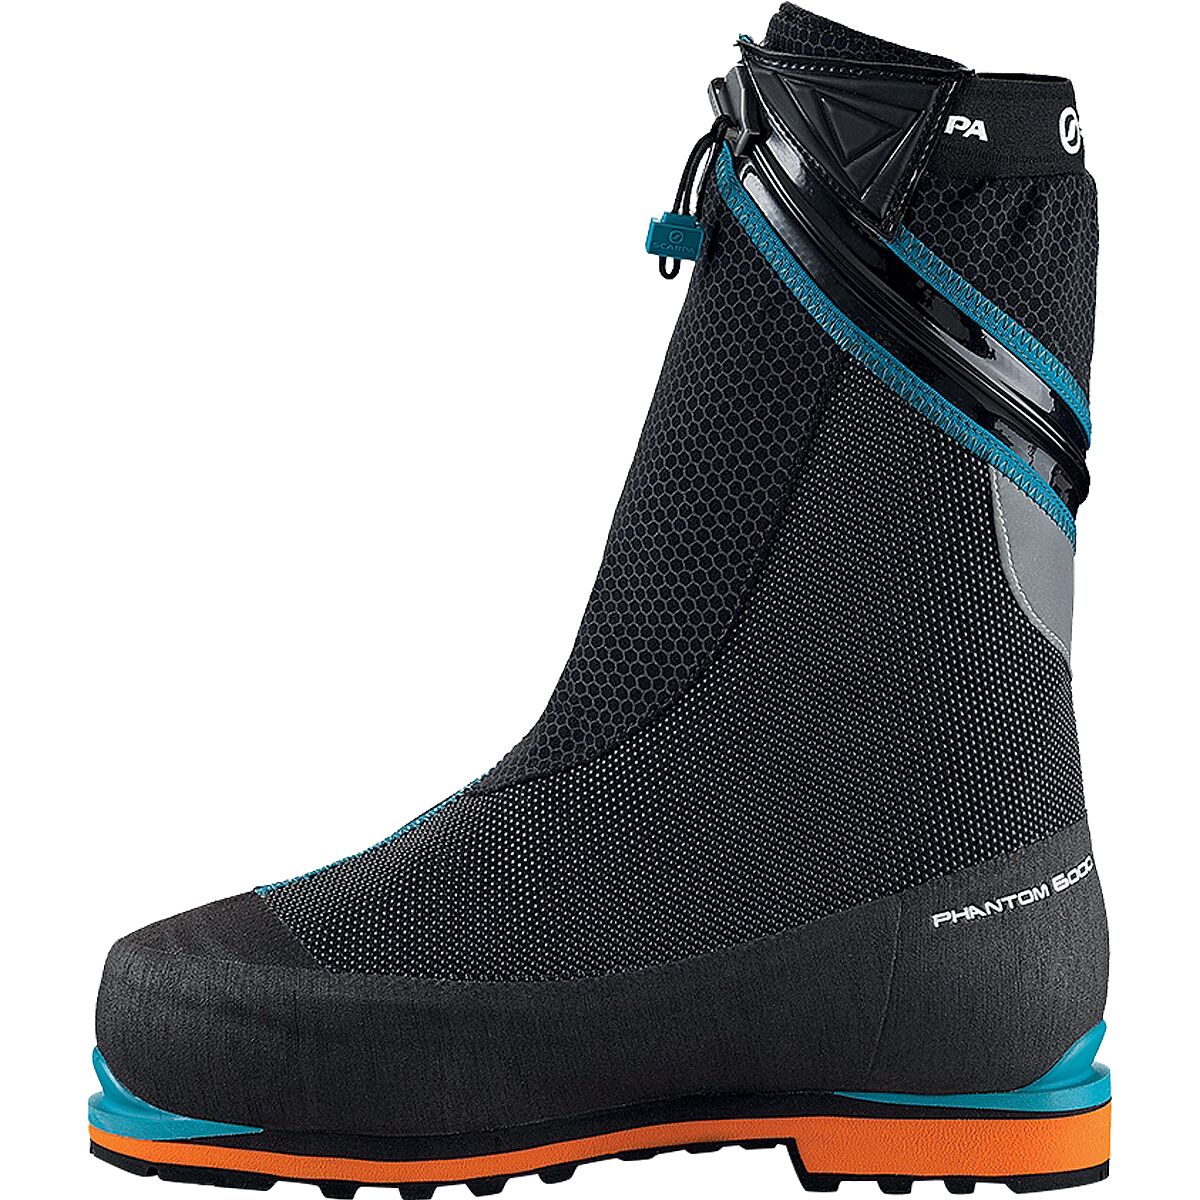 Scarpa Phantom 6000 Mountaineering Boot - Footwear